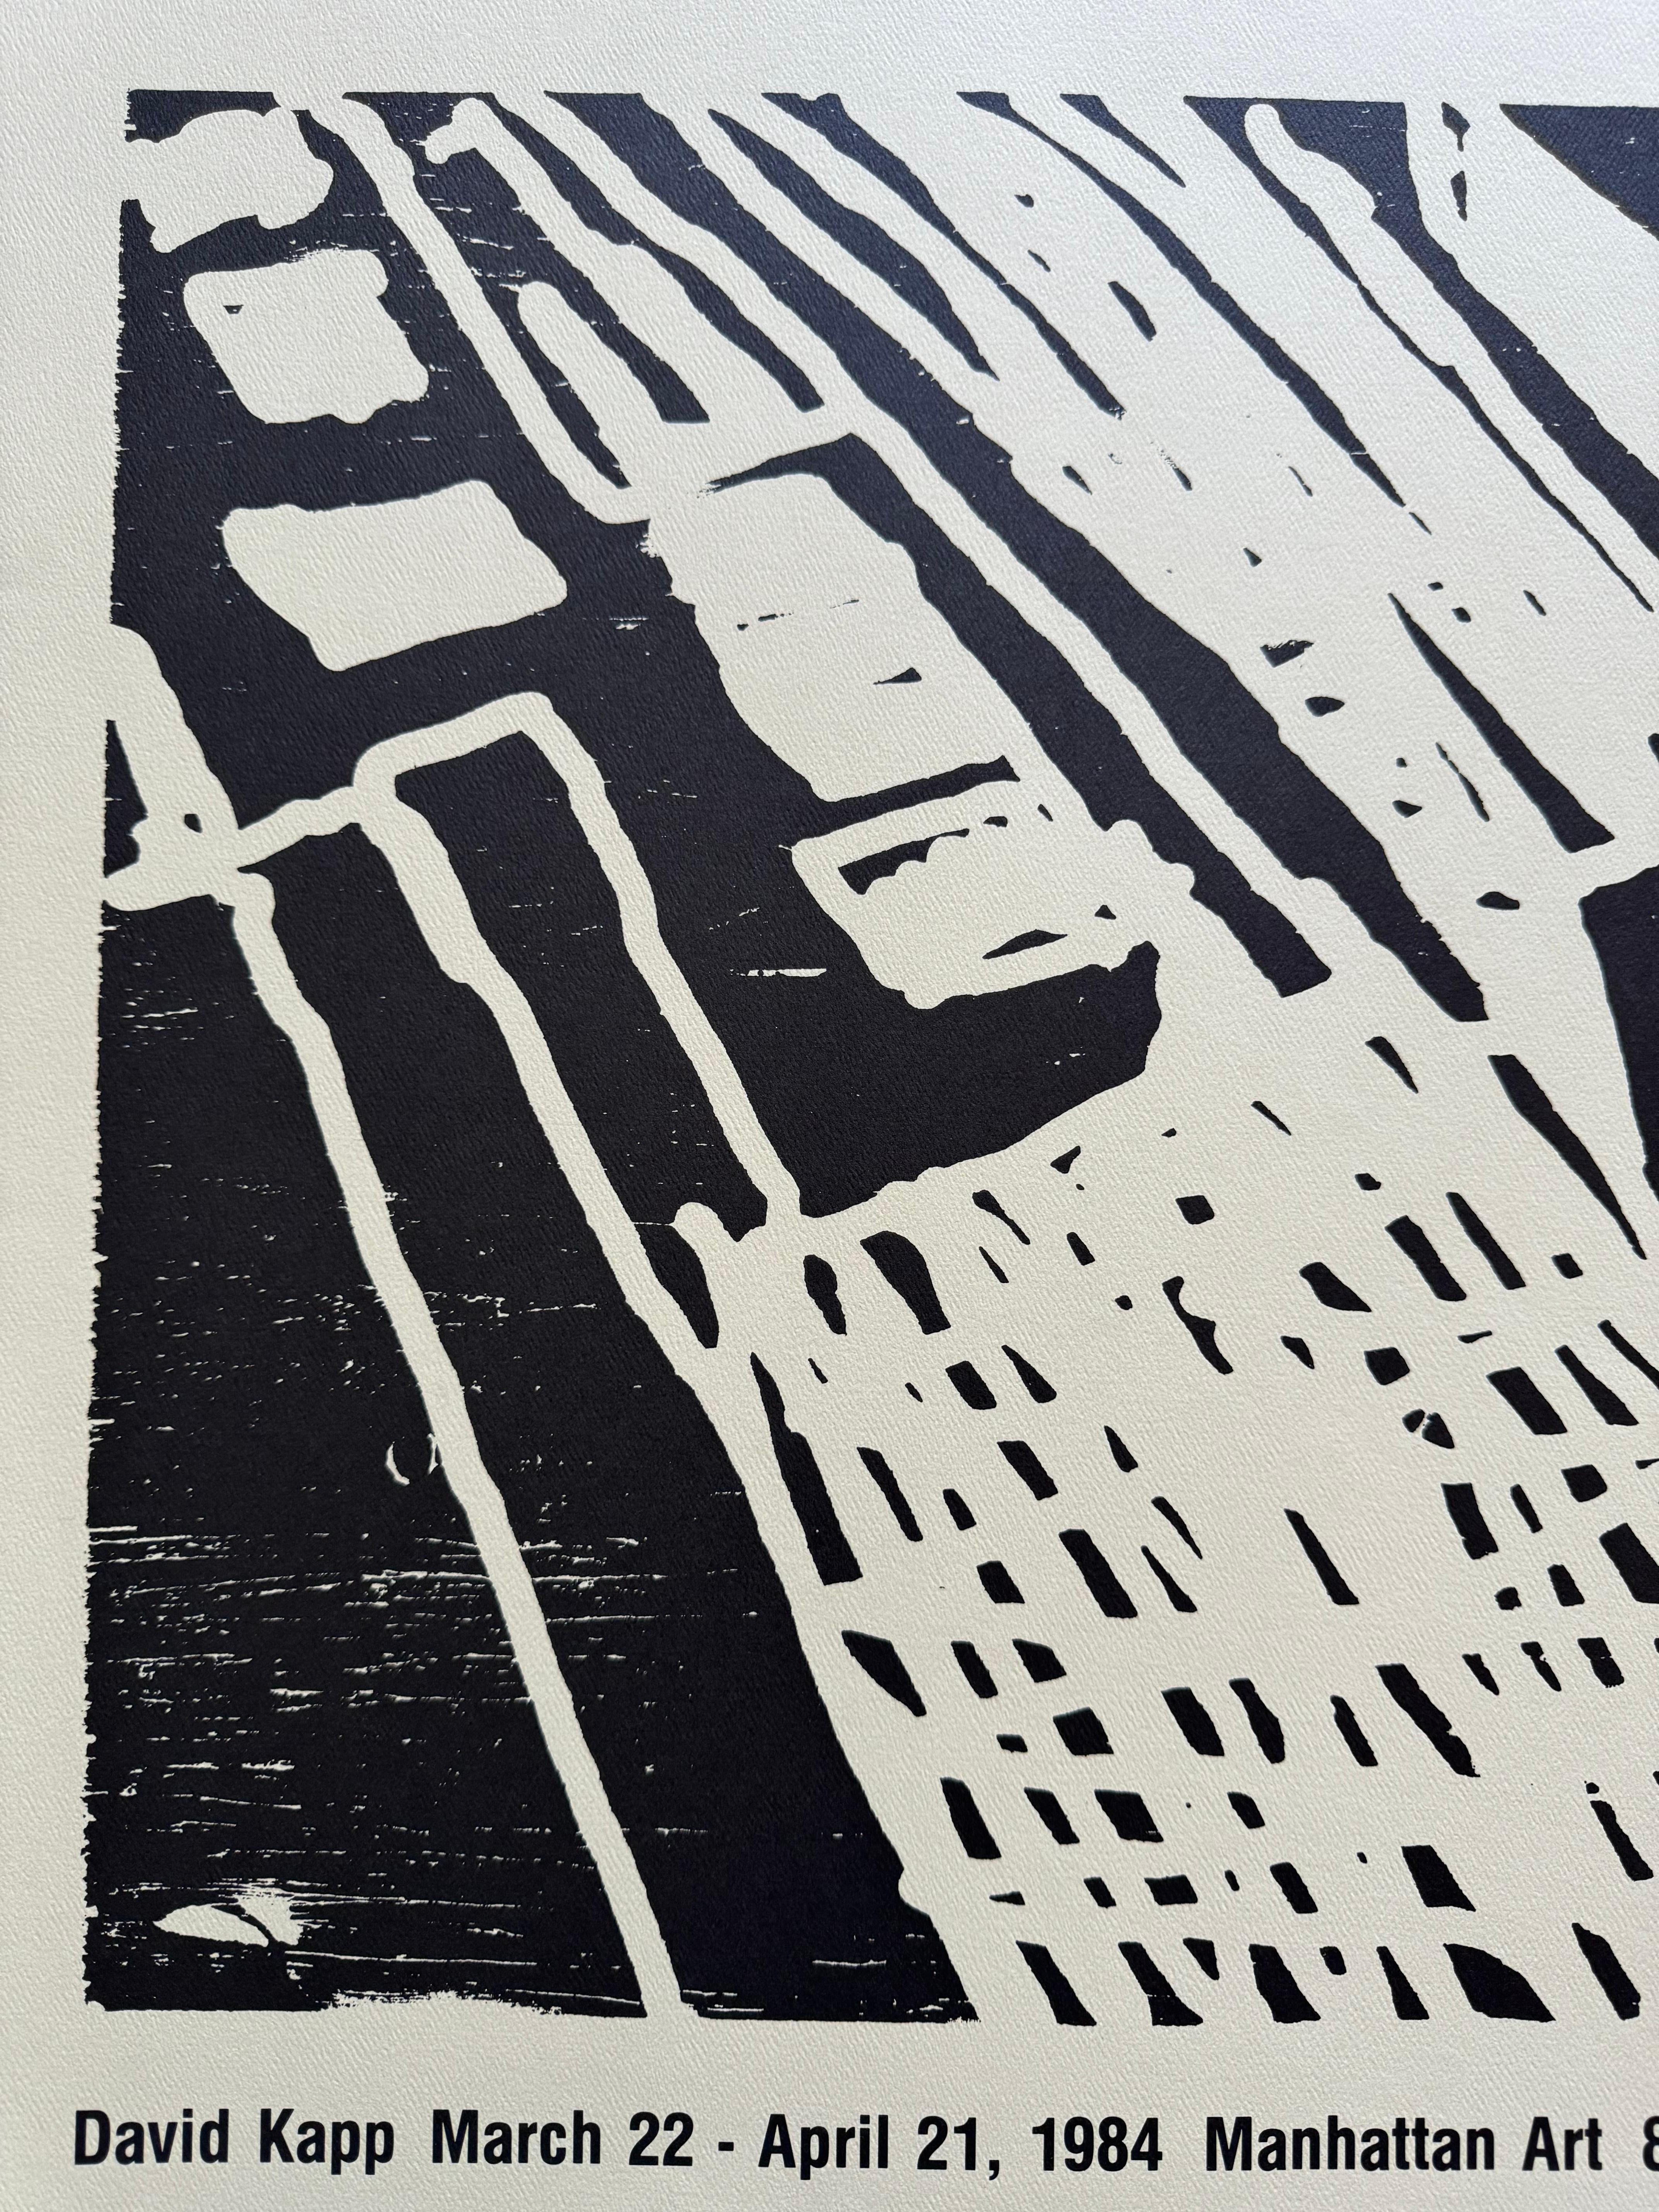 🎨 Exklusiver Kunstverkauf! Lassen Sie sich dieses zeitlose Stück von David Kapp nicht entgehen 🎨.

Fangen Sie die Essenz der New Yorker Kunstszene mit unserem atemberaubenden abstrakten Druck auf Velinpapier des bekannten Künstlers David Kapp ein.